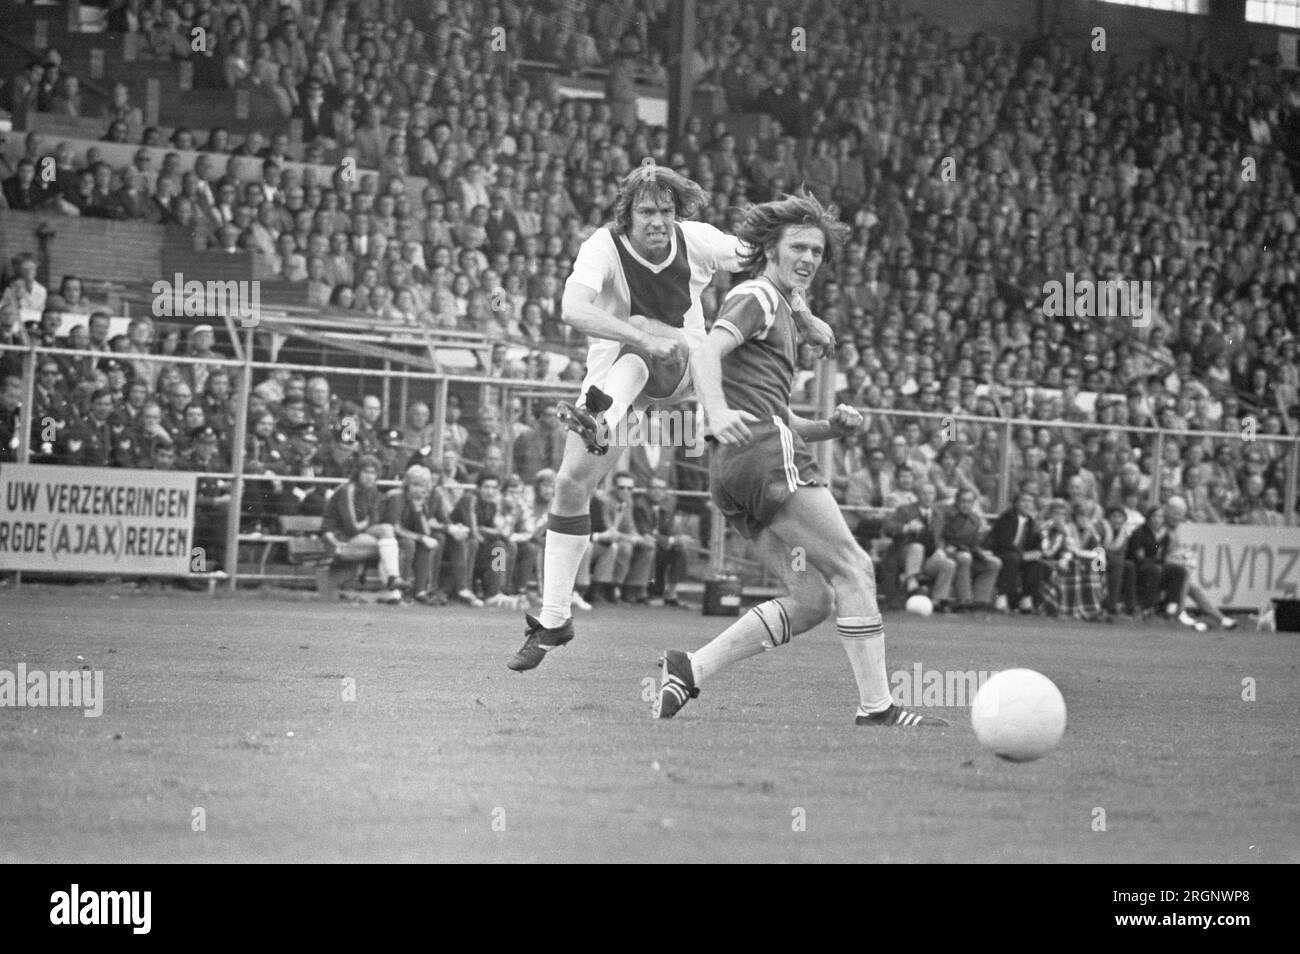 Ajax against Groningen 3-0, Jan Mulder (left) in action ca. September 1972 Stock Photo